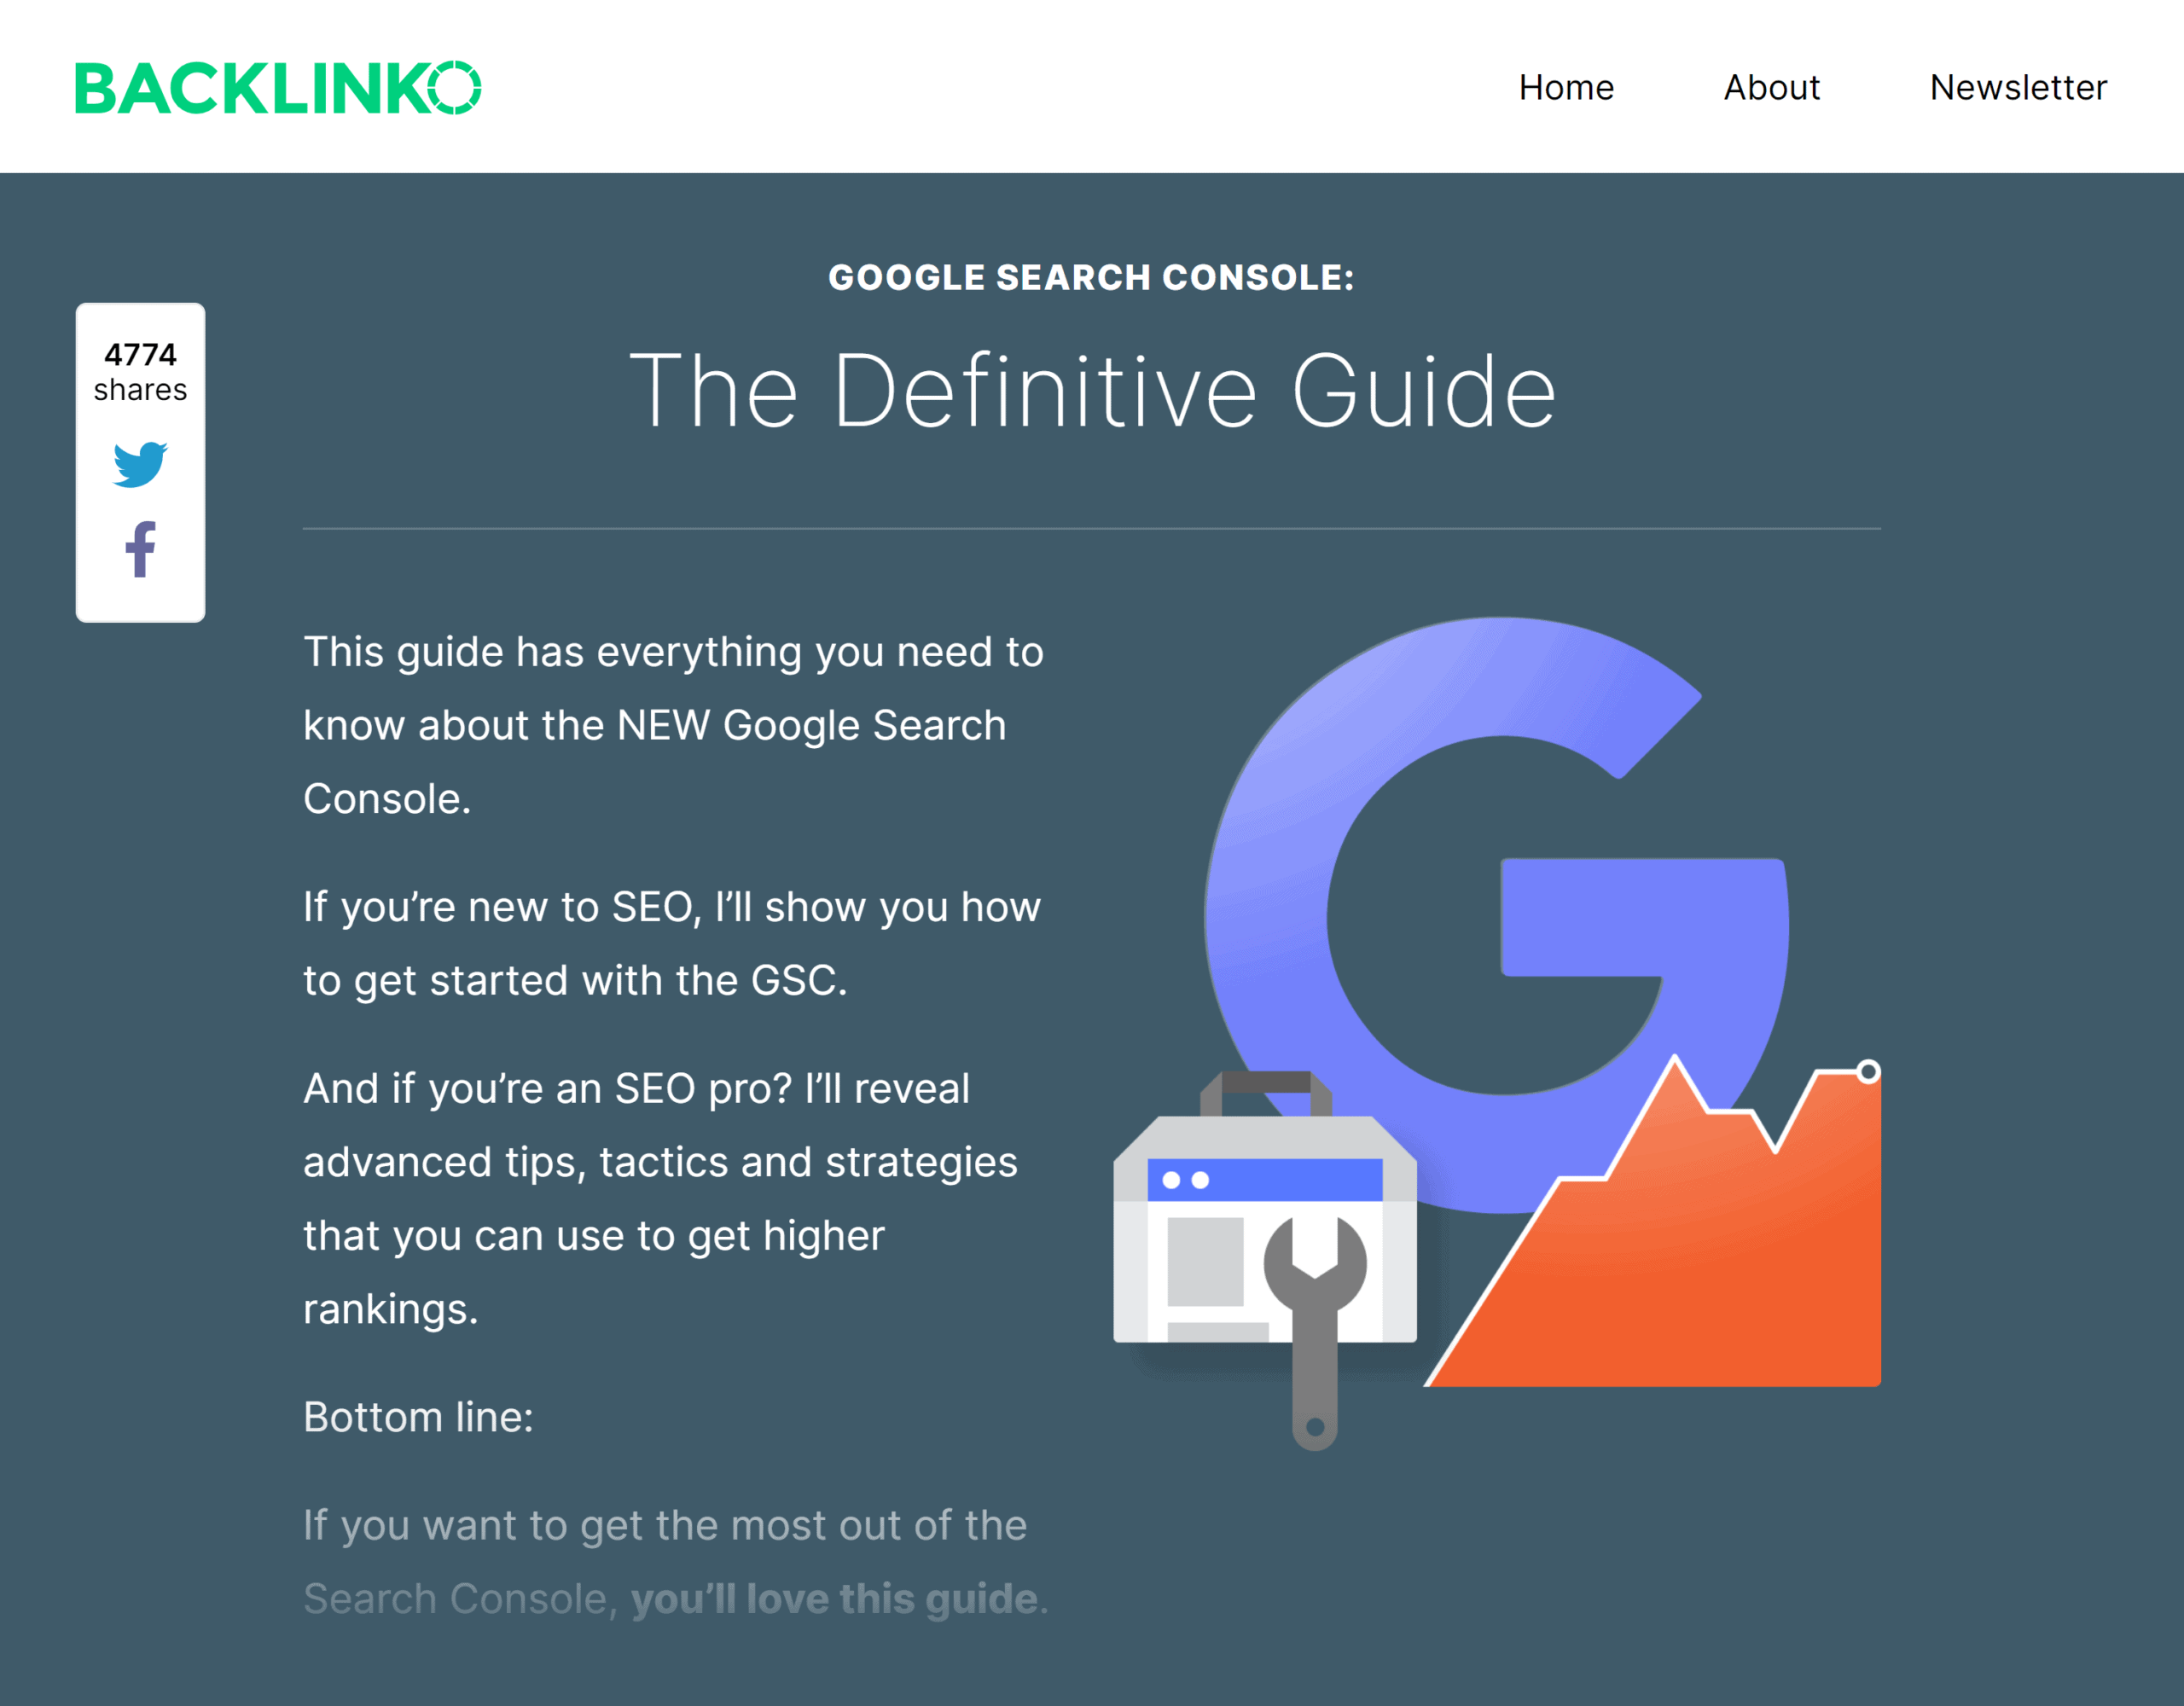 backlinko-google-search-console-2021